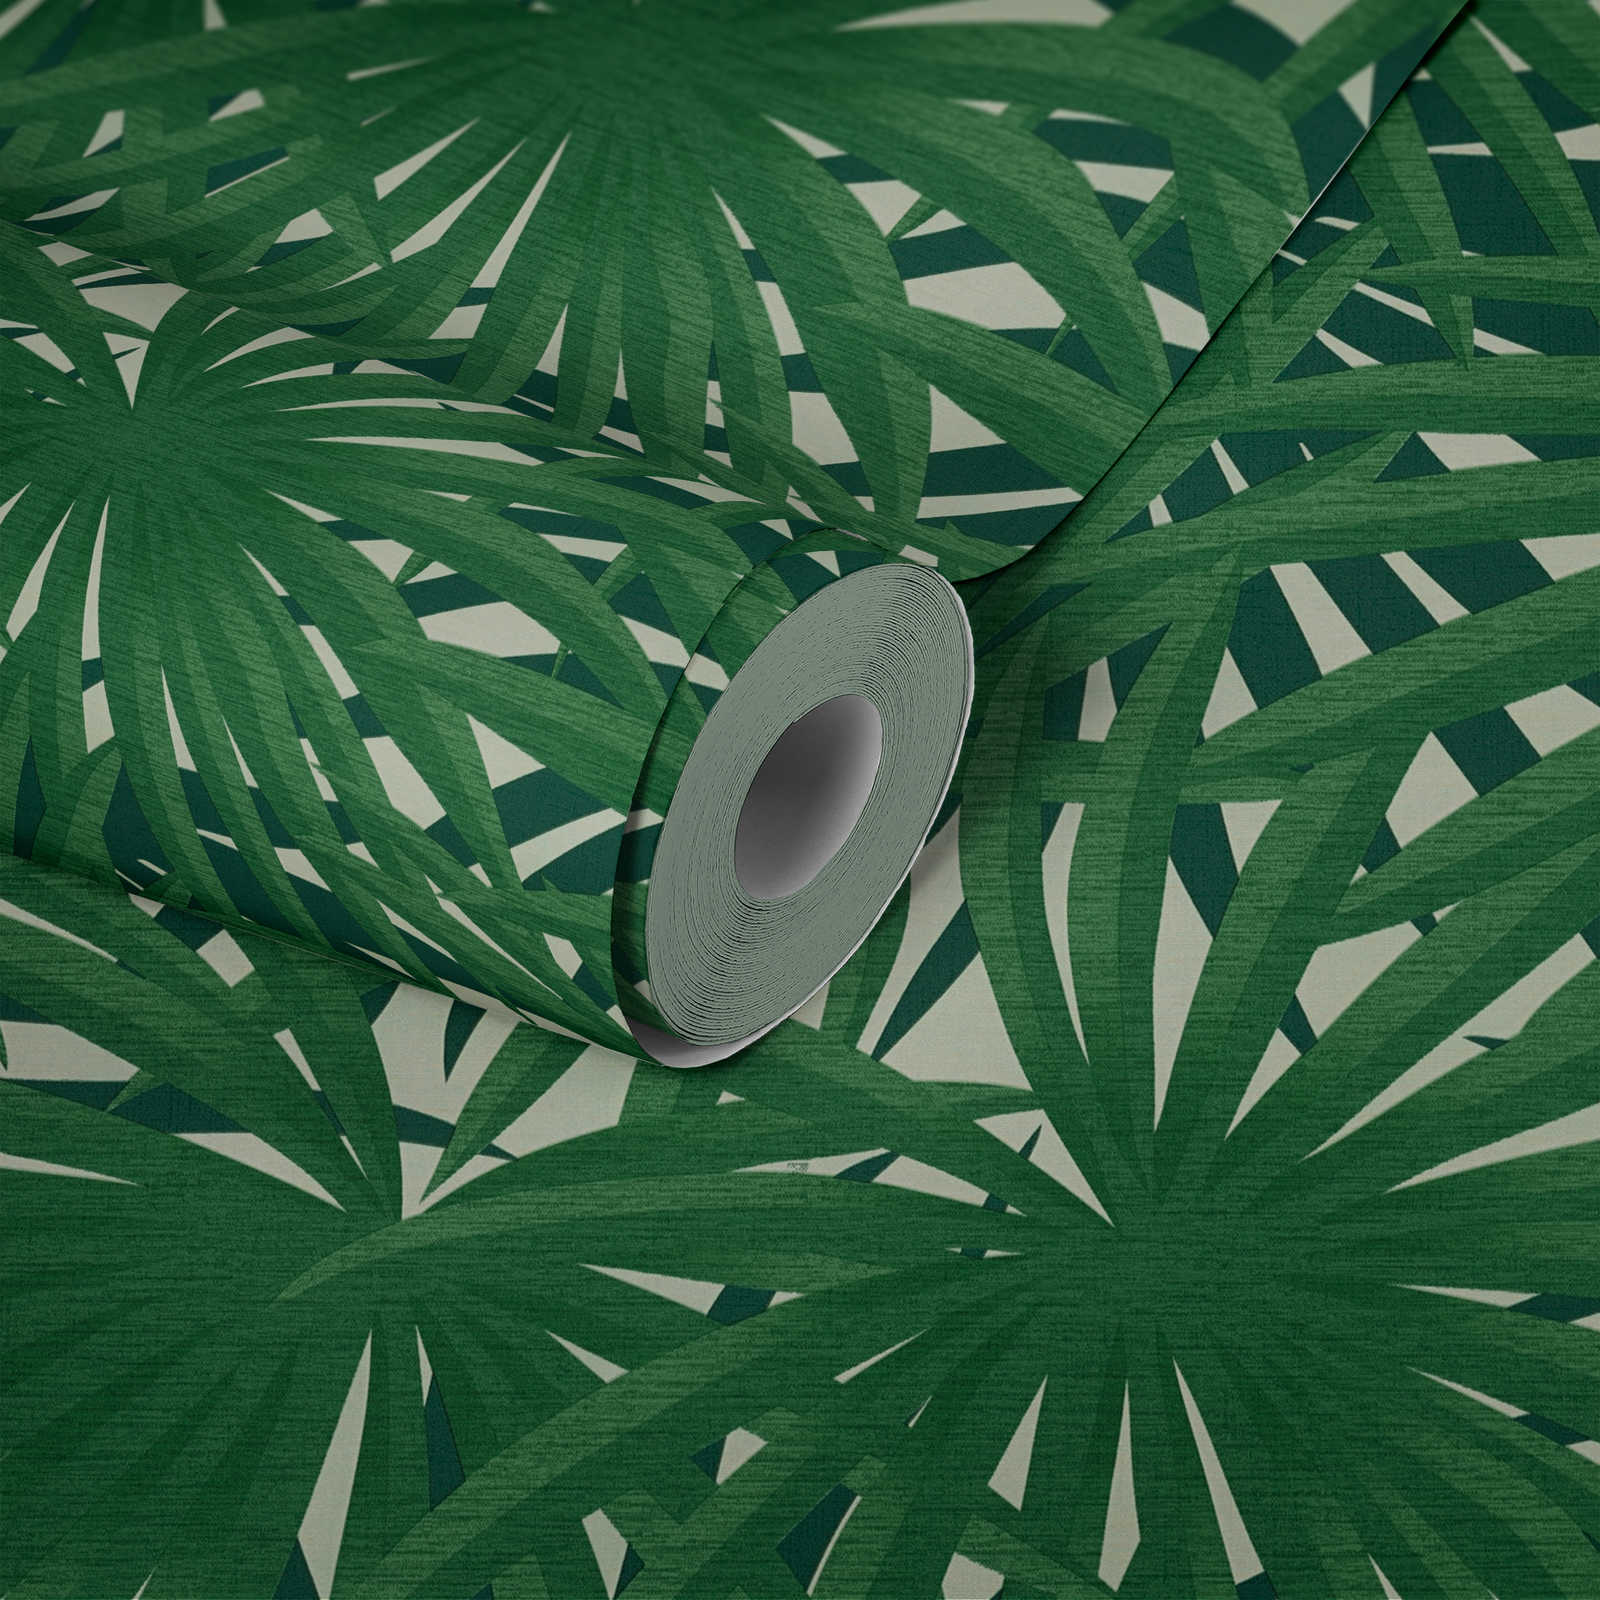             Papel pintado tropical con diseño selvático y brillo metálico - verde, metálico, blanco
        